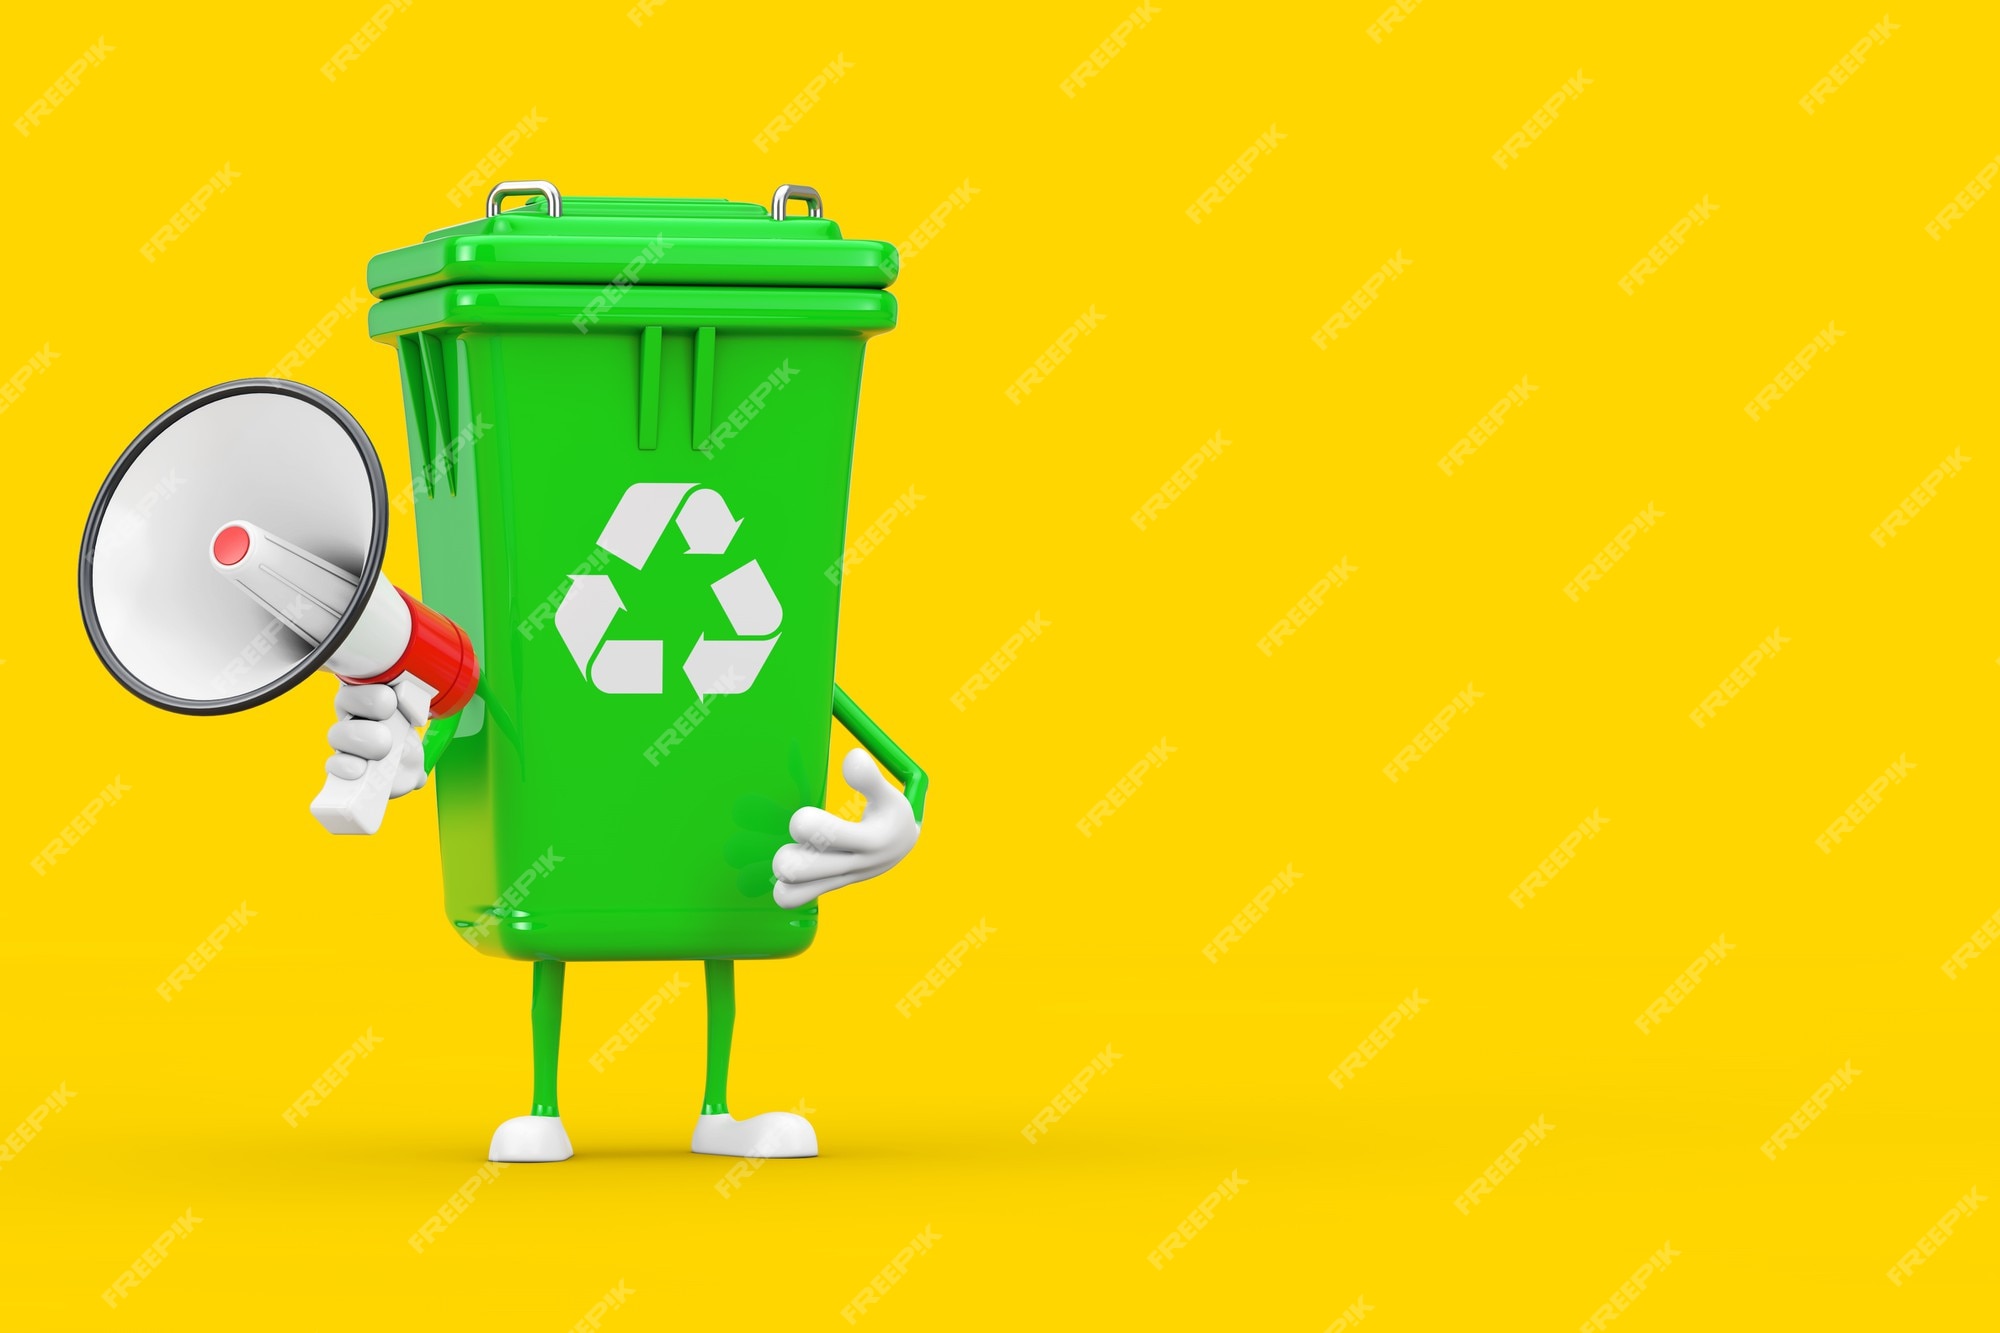 Indringing Transplanteren Druppelen Recycle teken groene vuilnisbak karakter mascotte met rode retro megafoon  op een gele achtergrond. 3d-rendering | Premium Foto